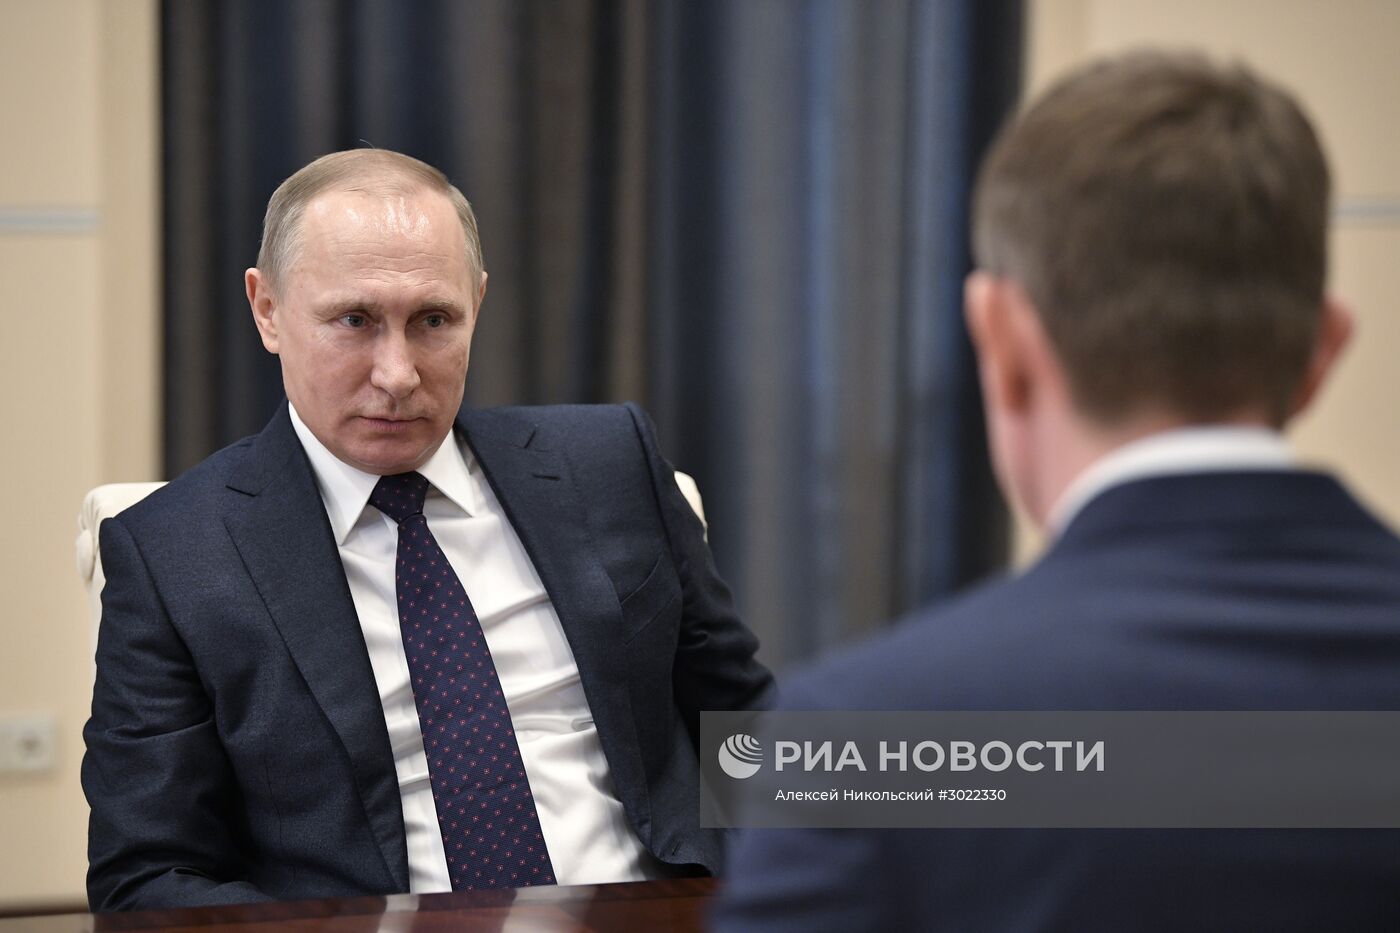 Президент РФ В. Путин встретился с врио губернатора Пермского края М. Решетниковым